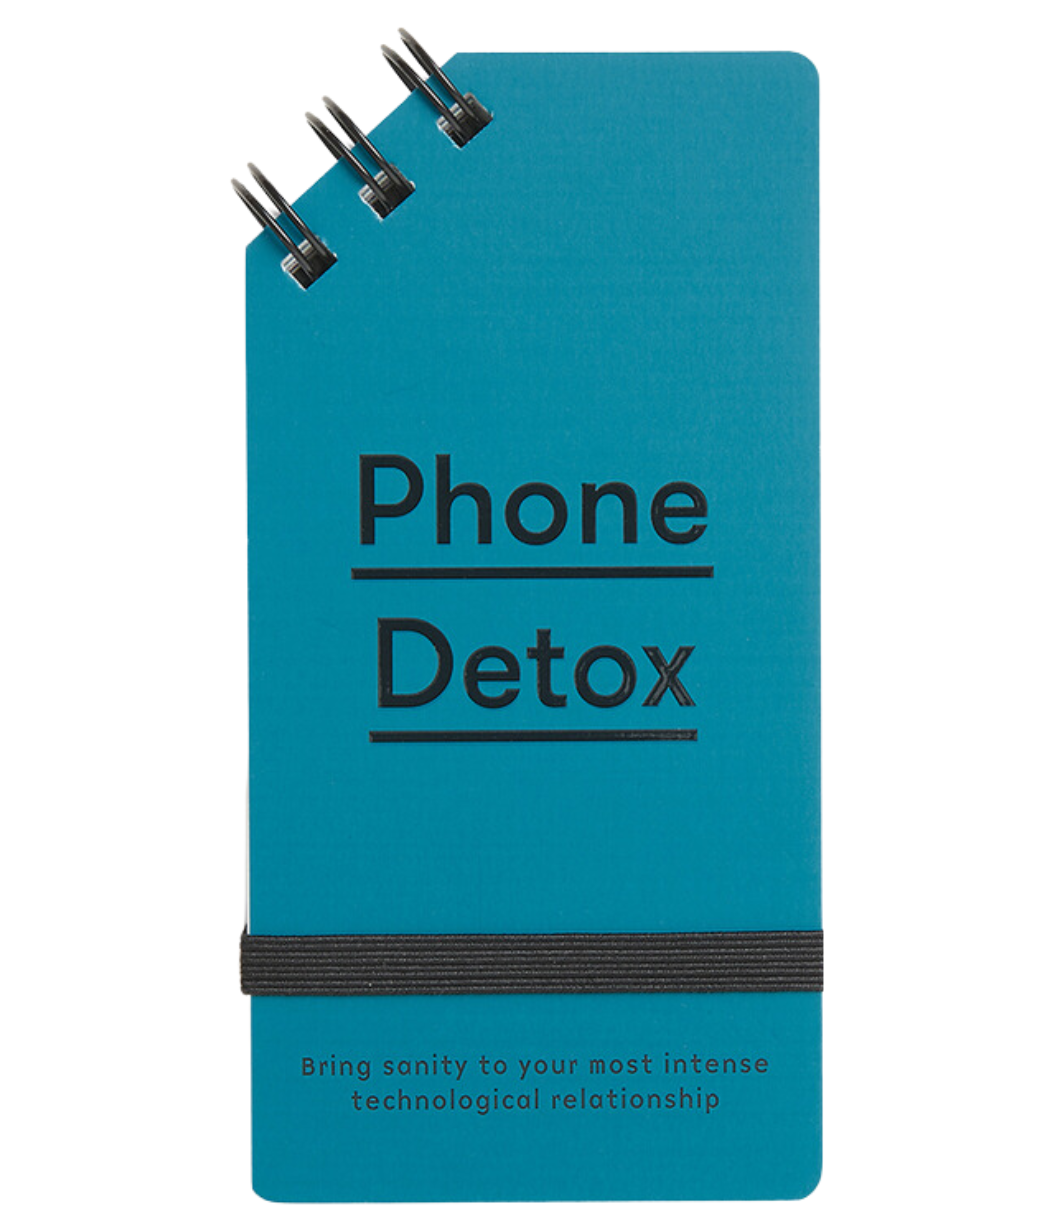 TSOL Press Phone Detox